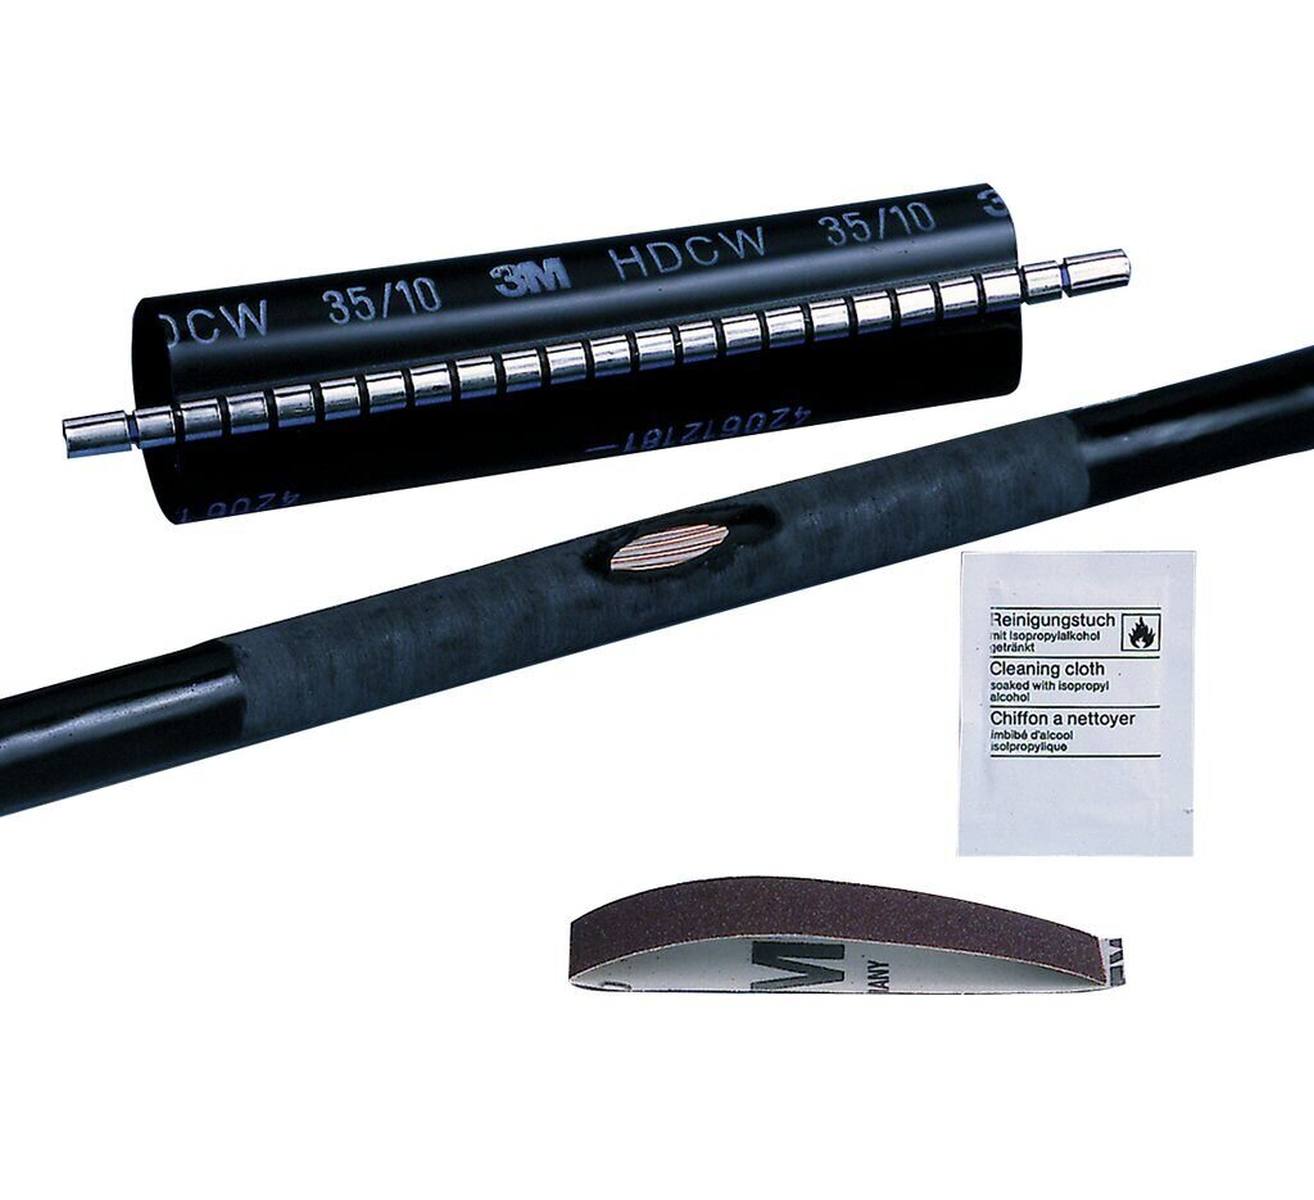  3M HDCW lämpökutistuva korjausholkki, musta, 55/15 mm, 250 mm